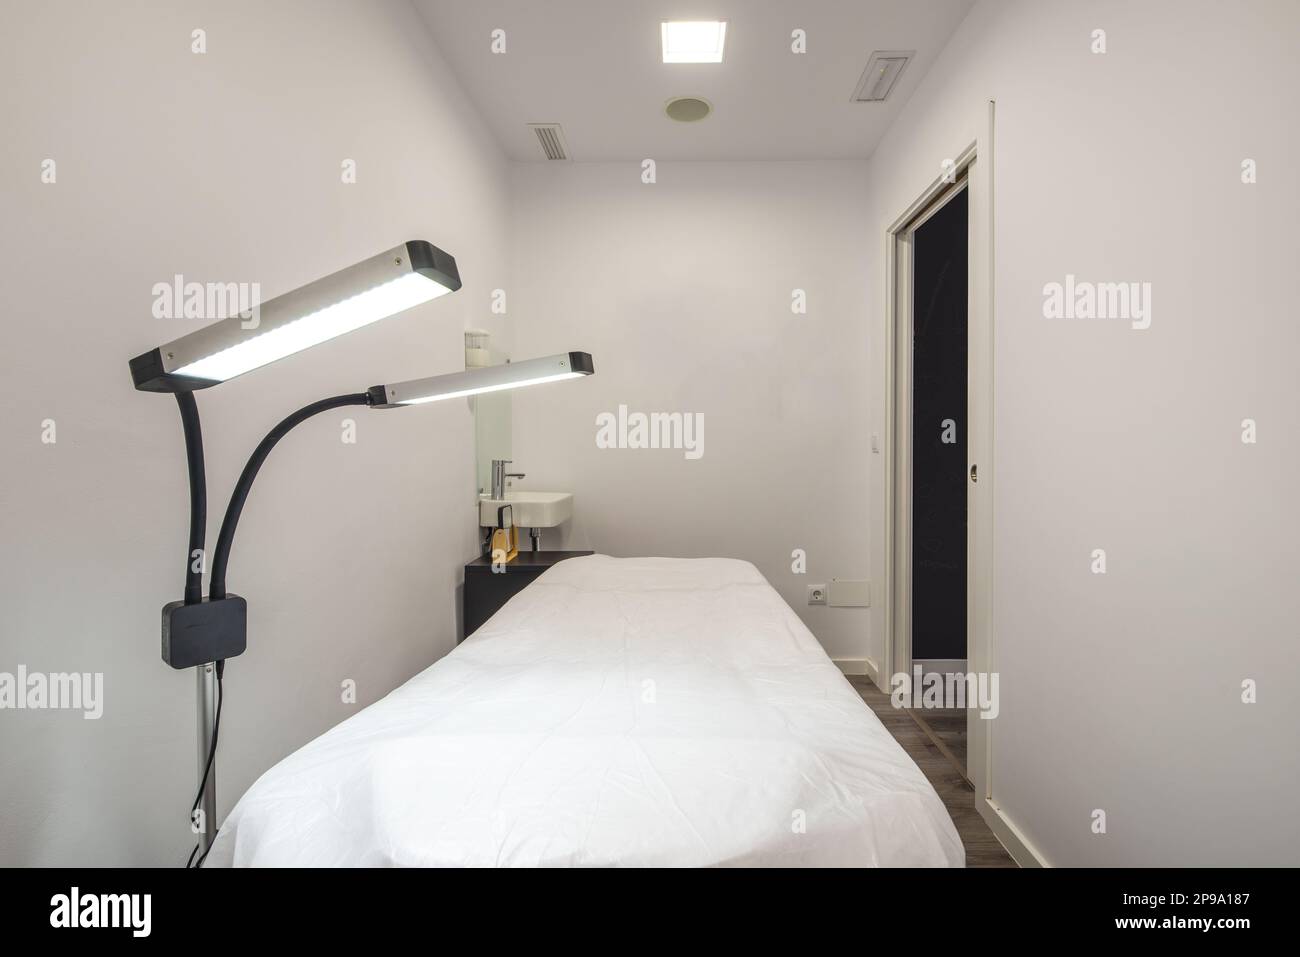 Cabine individuali nella sala massaggi con letti per l'applicazione di trattamenti con potenti lampade a doppio LED Foto Stock